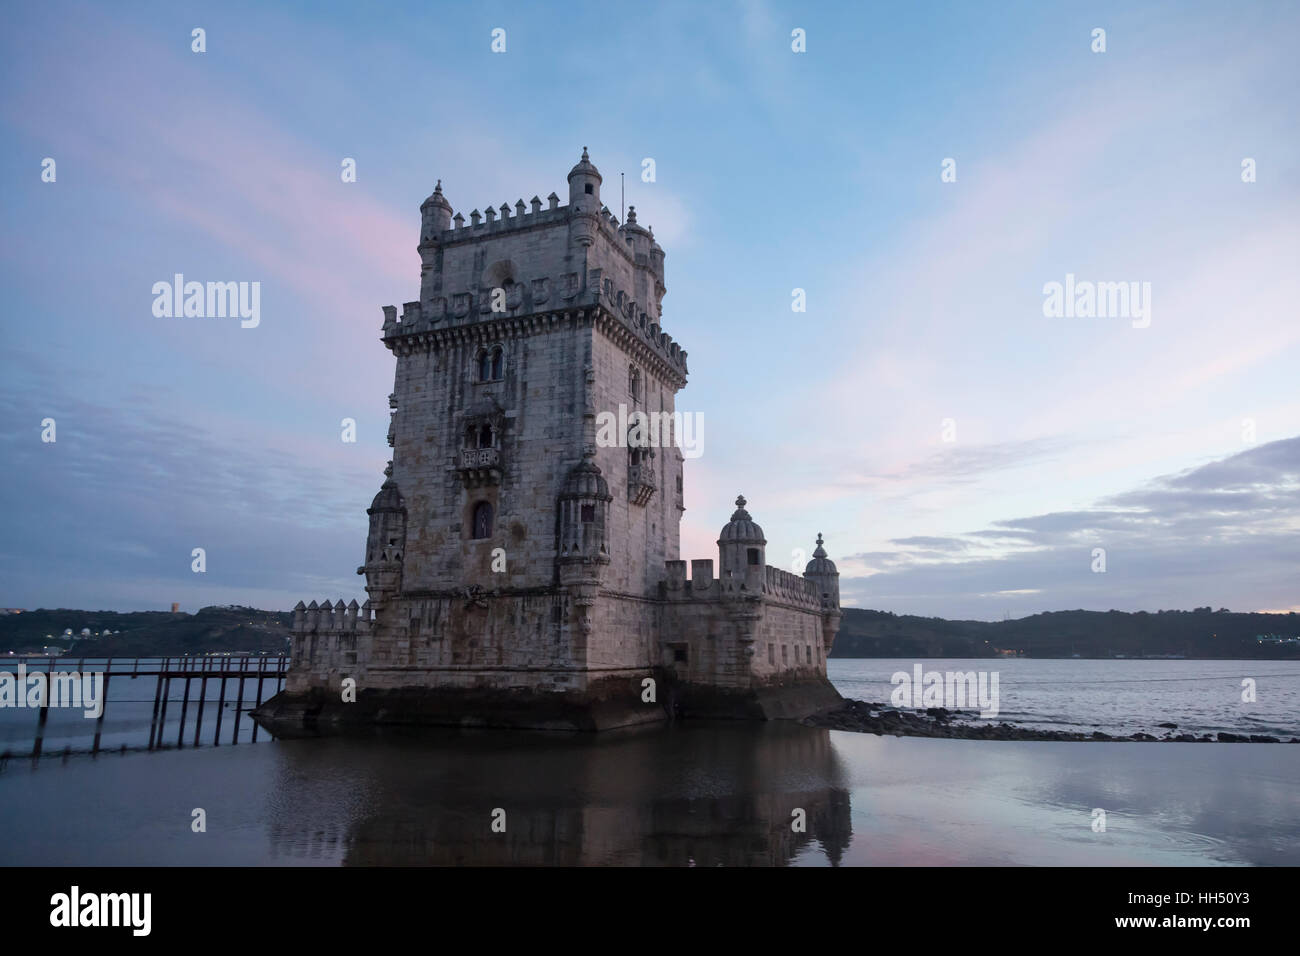 Lisboa, Portugal: la Torre de Belém en la ribera del río Tajo. La fortificación del siglo XVI es un destacado ejemplo del estilo manuelino portugués. Foto de stock